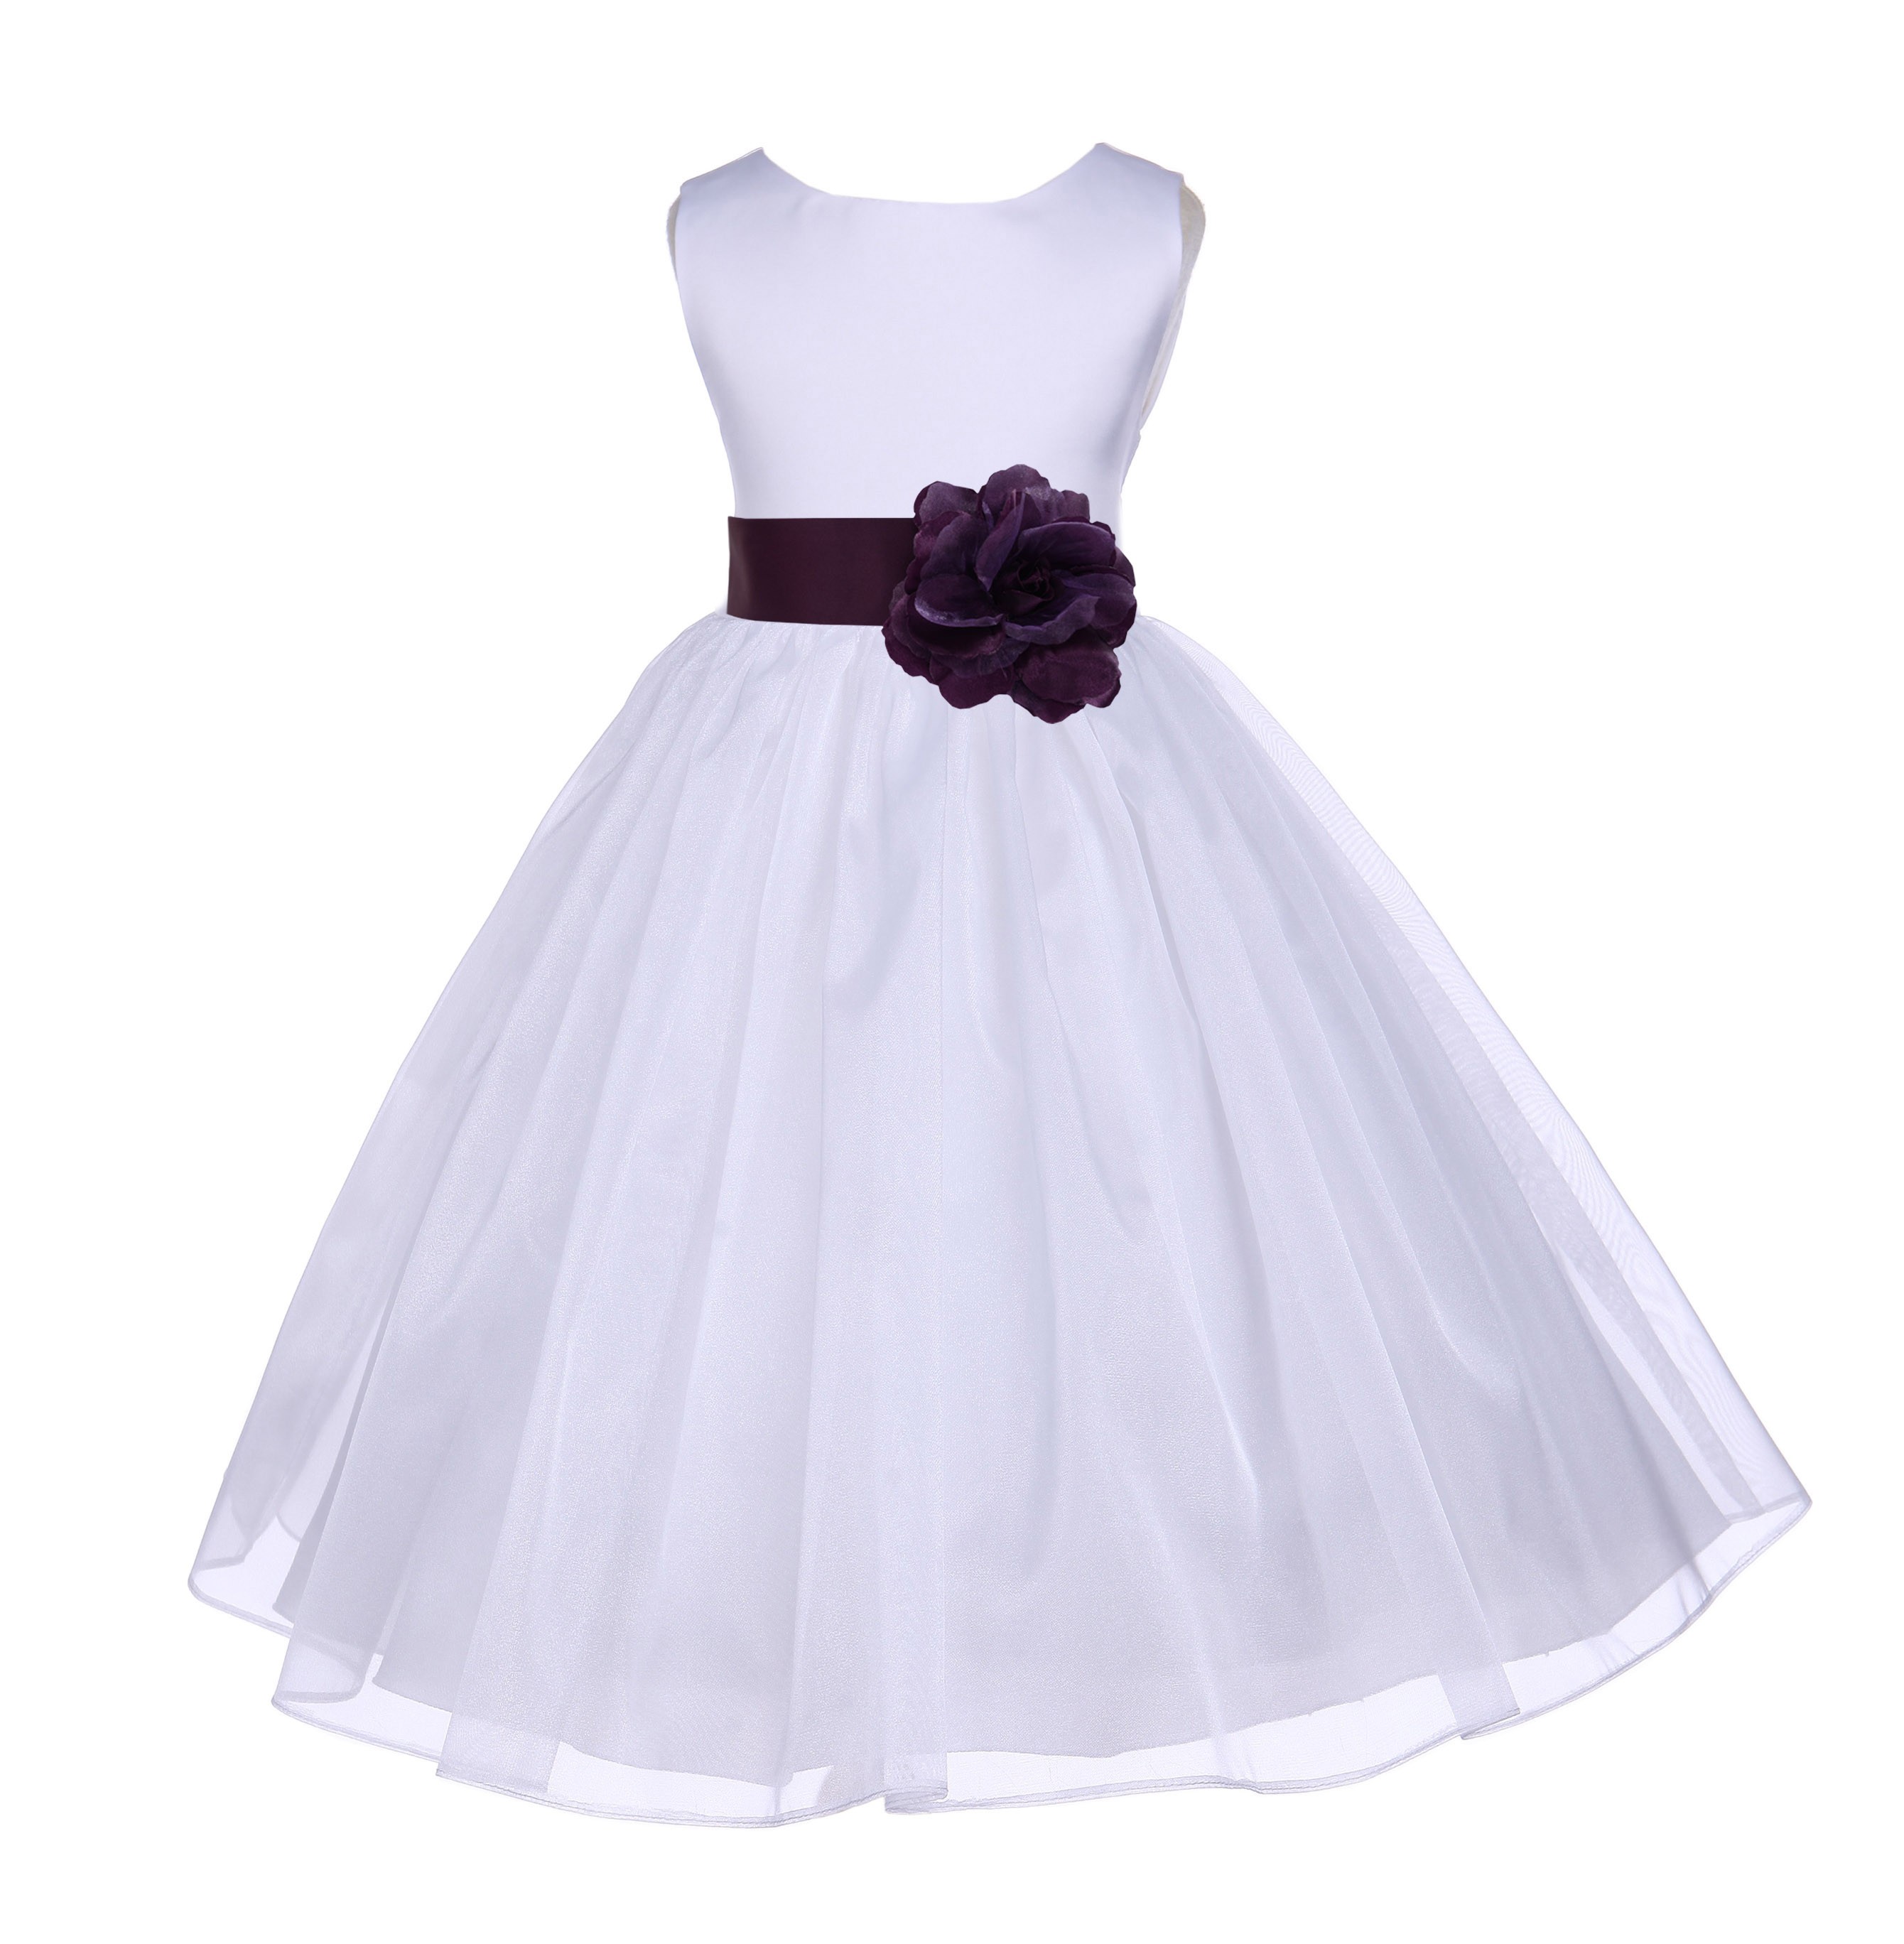 White/Plum Satin Bodice Organza Skirt Flower Girl Dress 841T